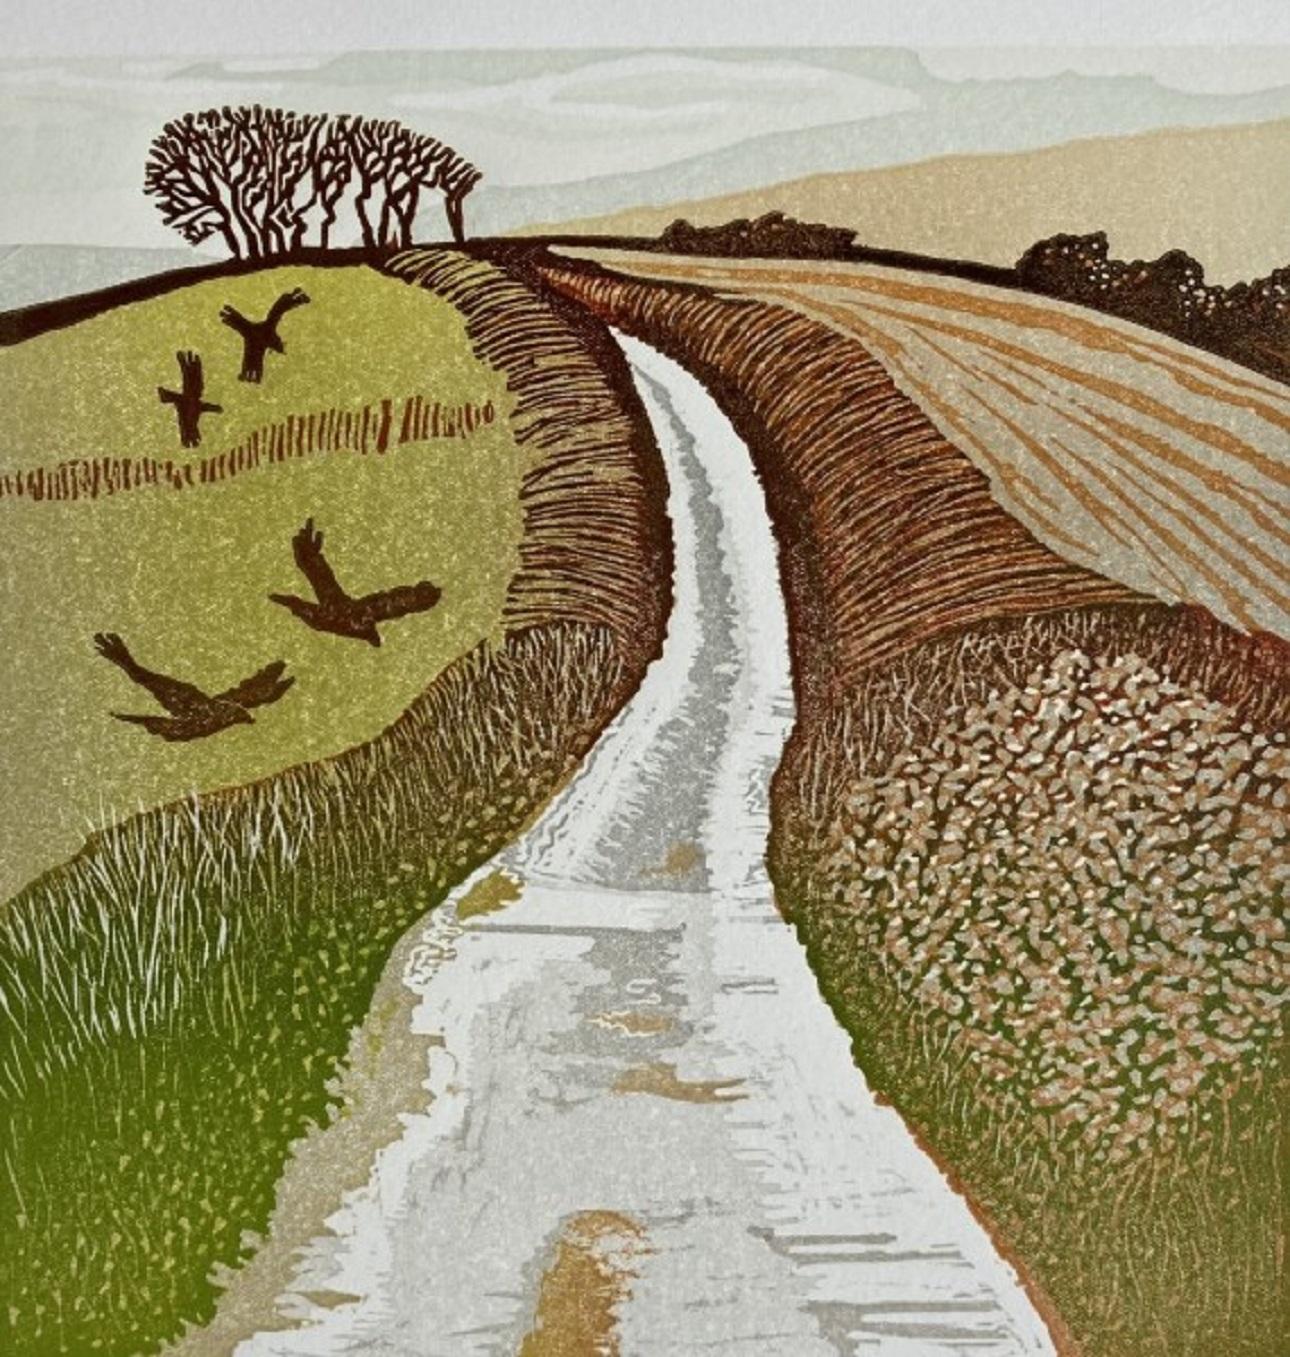 Ann Burnham Animal Print – The Road to Coleton Fishacre, Landschaftsdruck in limitierter Auflage